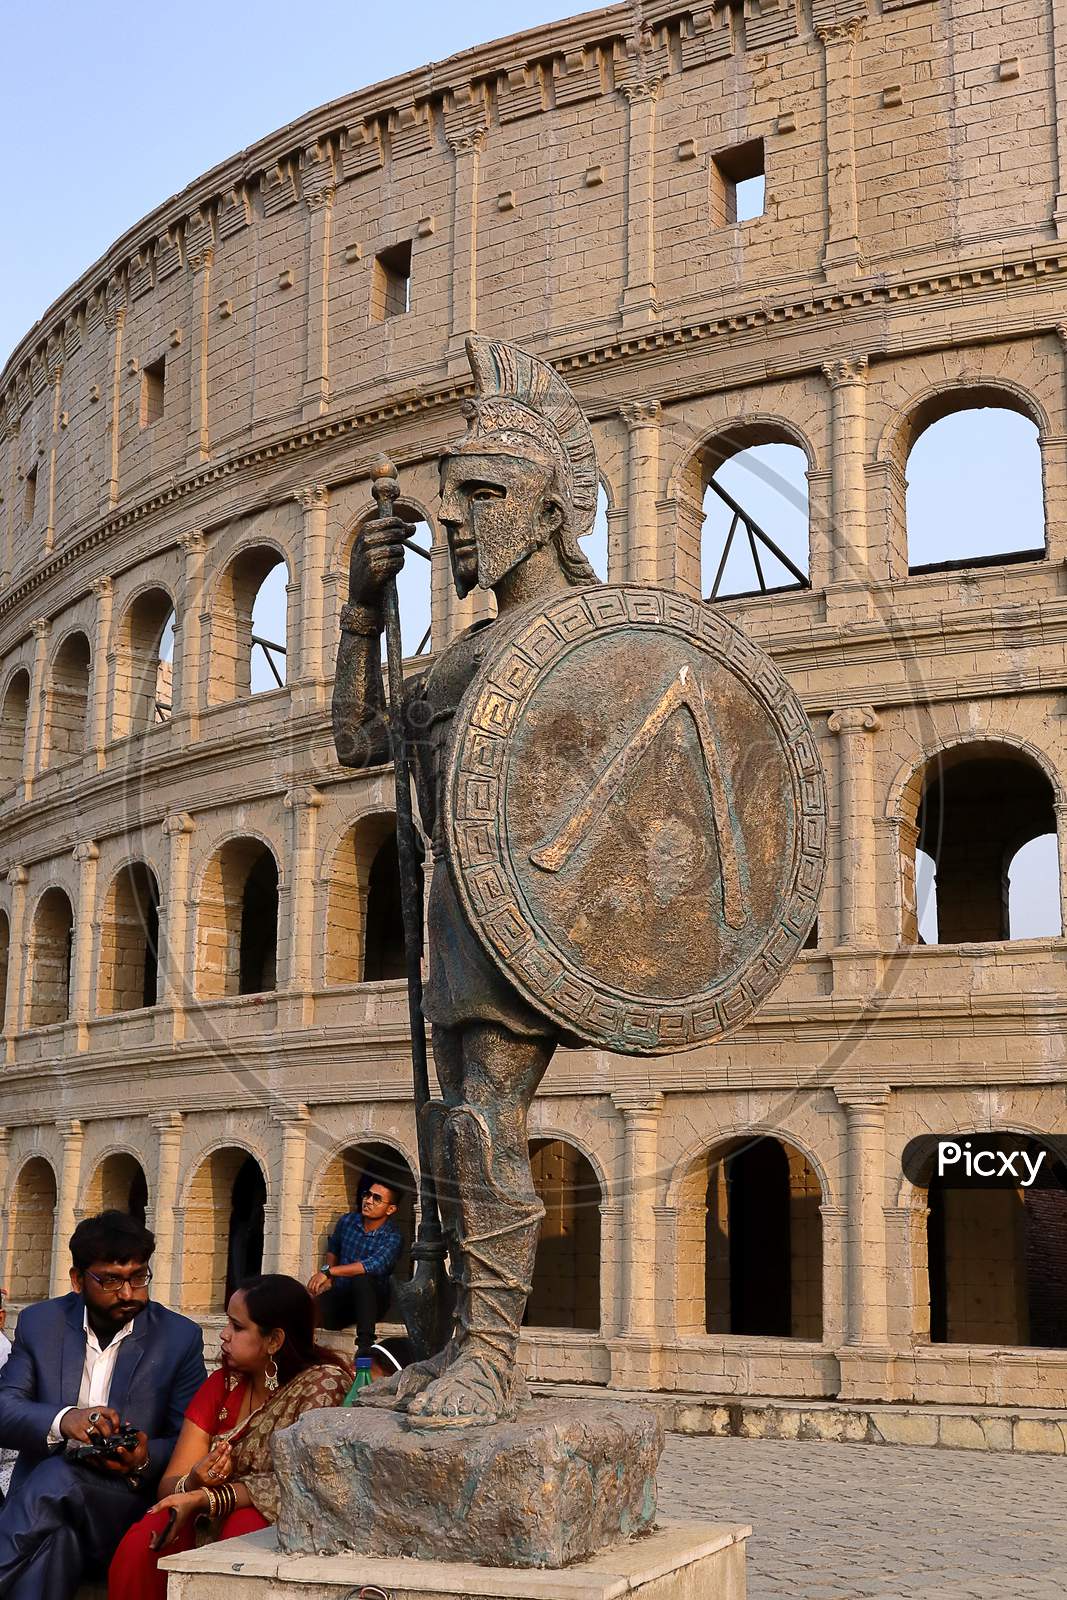 Model Colosseum Of Rome.